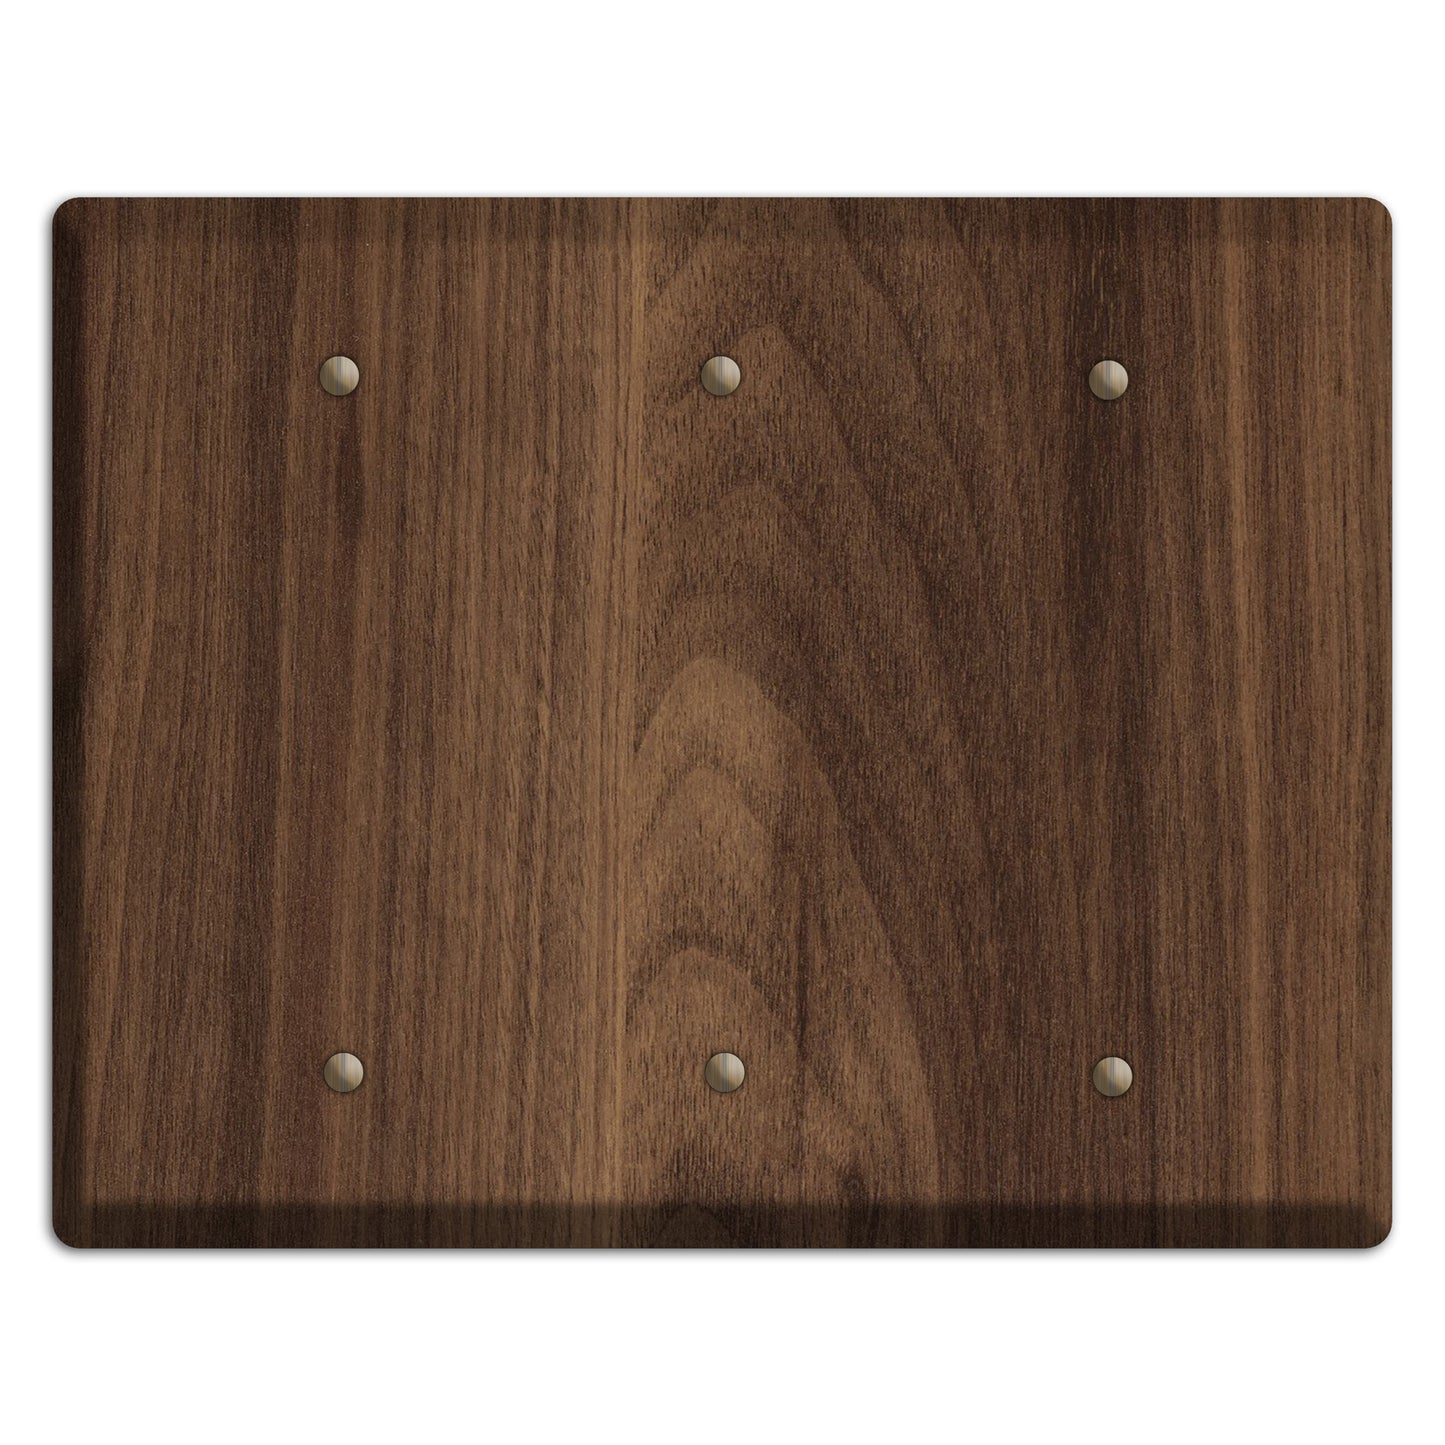 Walnut Wood Triple Blank Cover Plate